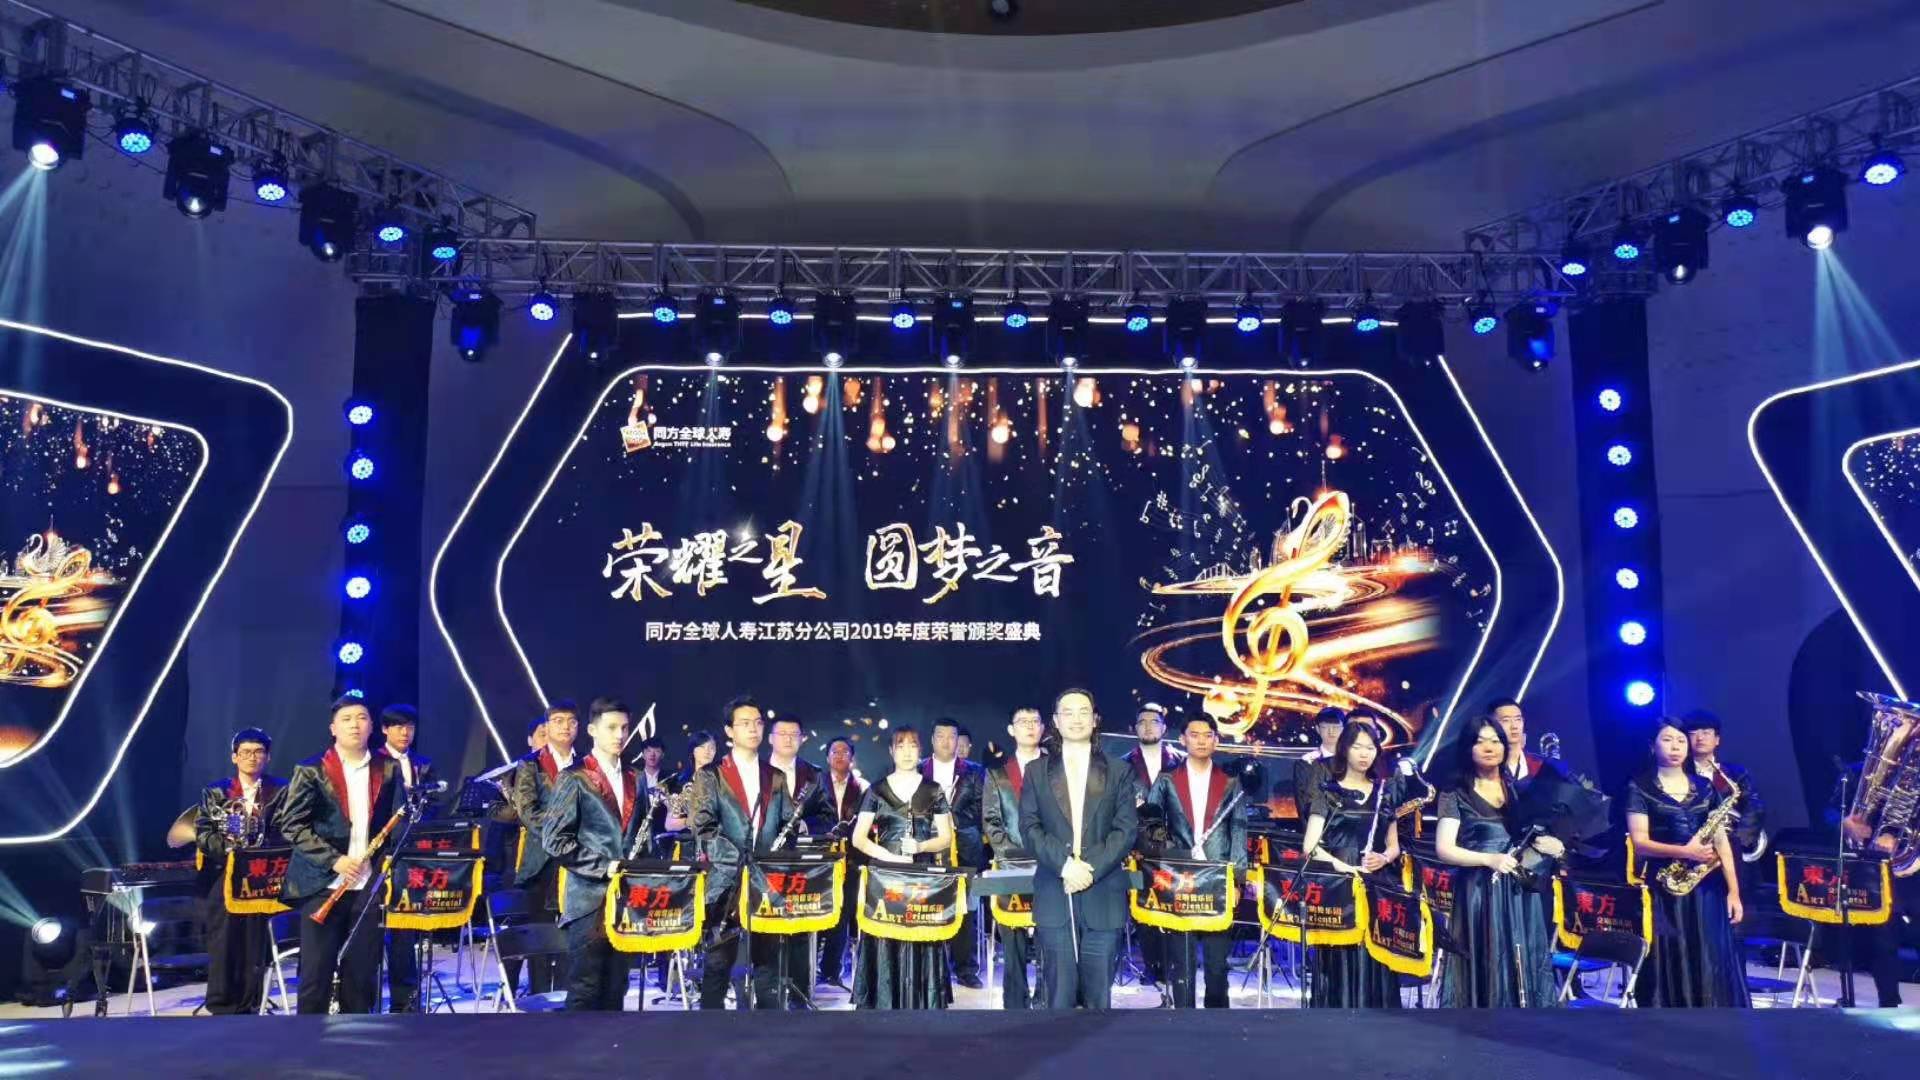 同方全球人寿江苏分公司2019年度荣誉颁奖盛典